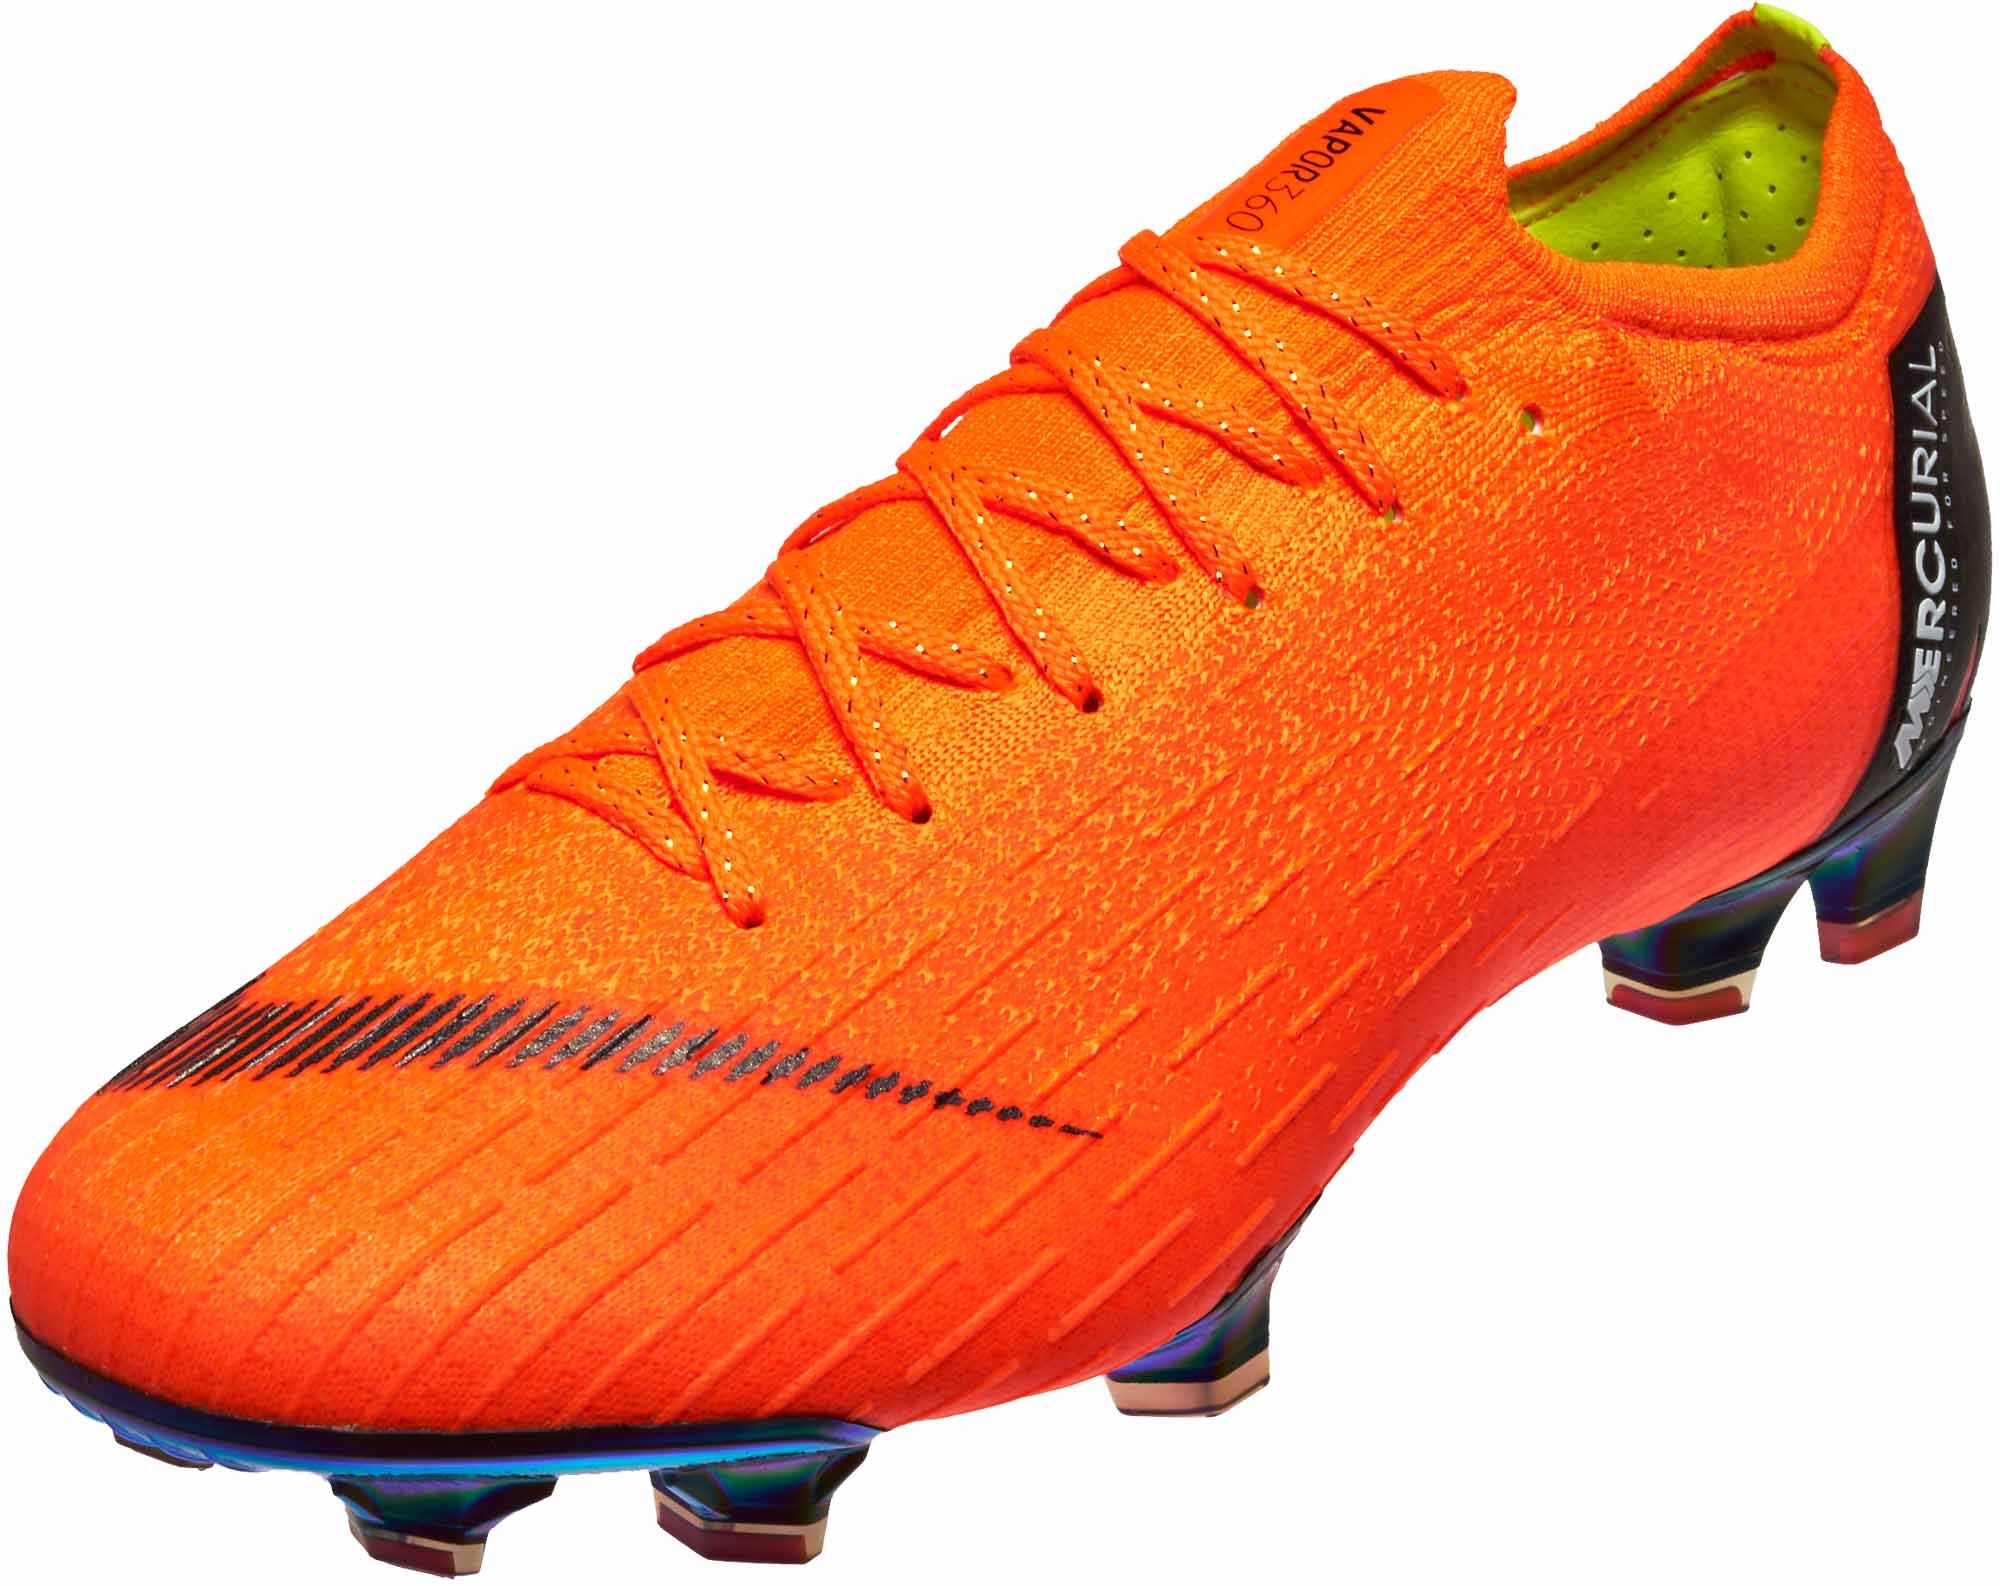 Elite FG - Total Orange/Volt - SoccerPro